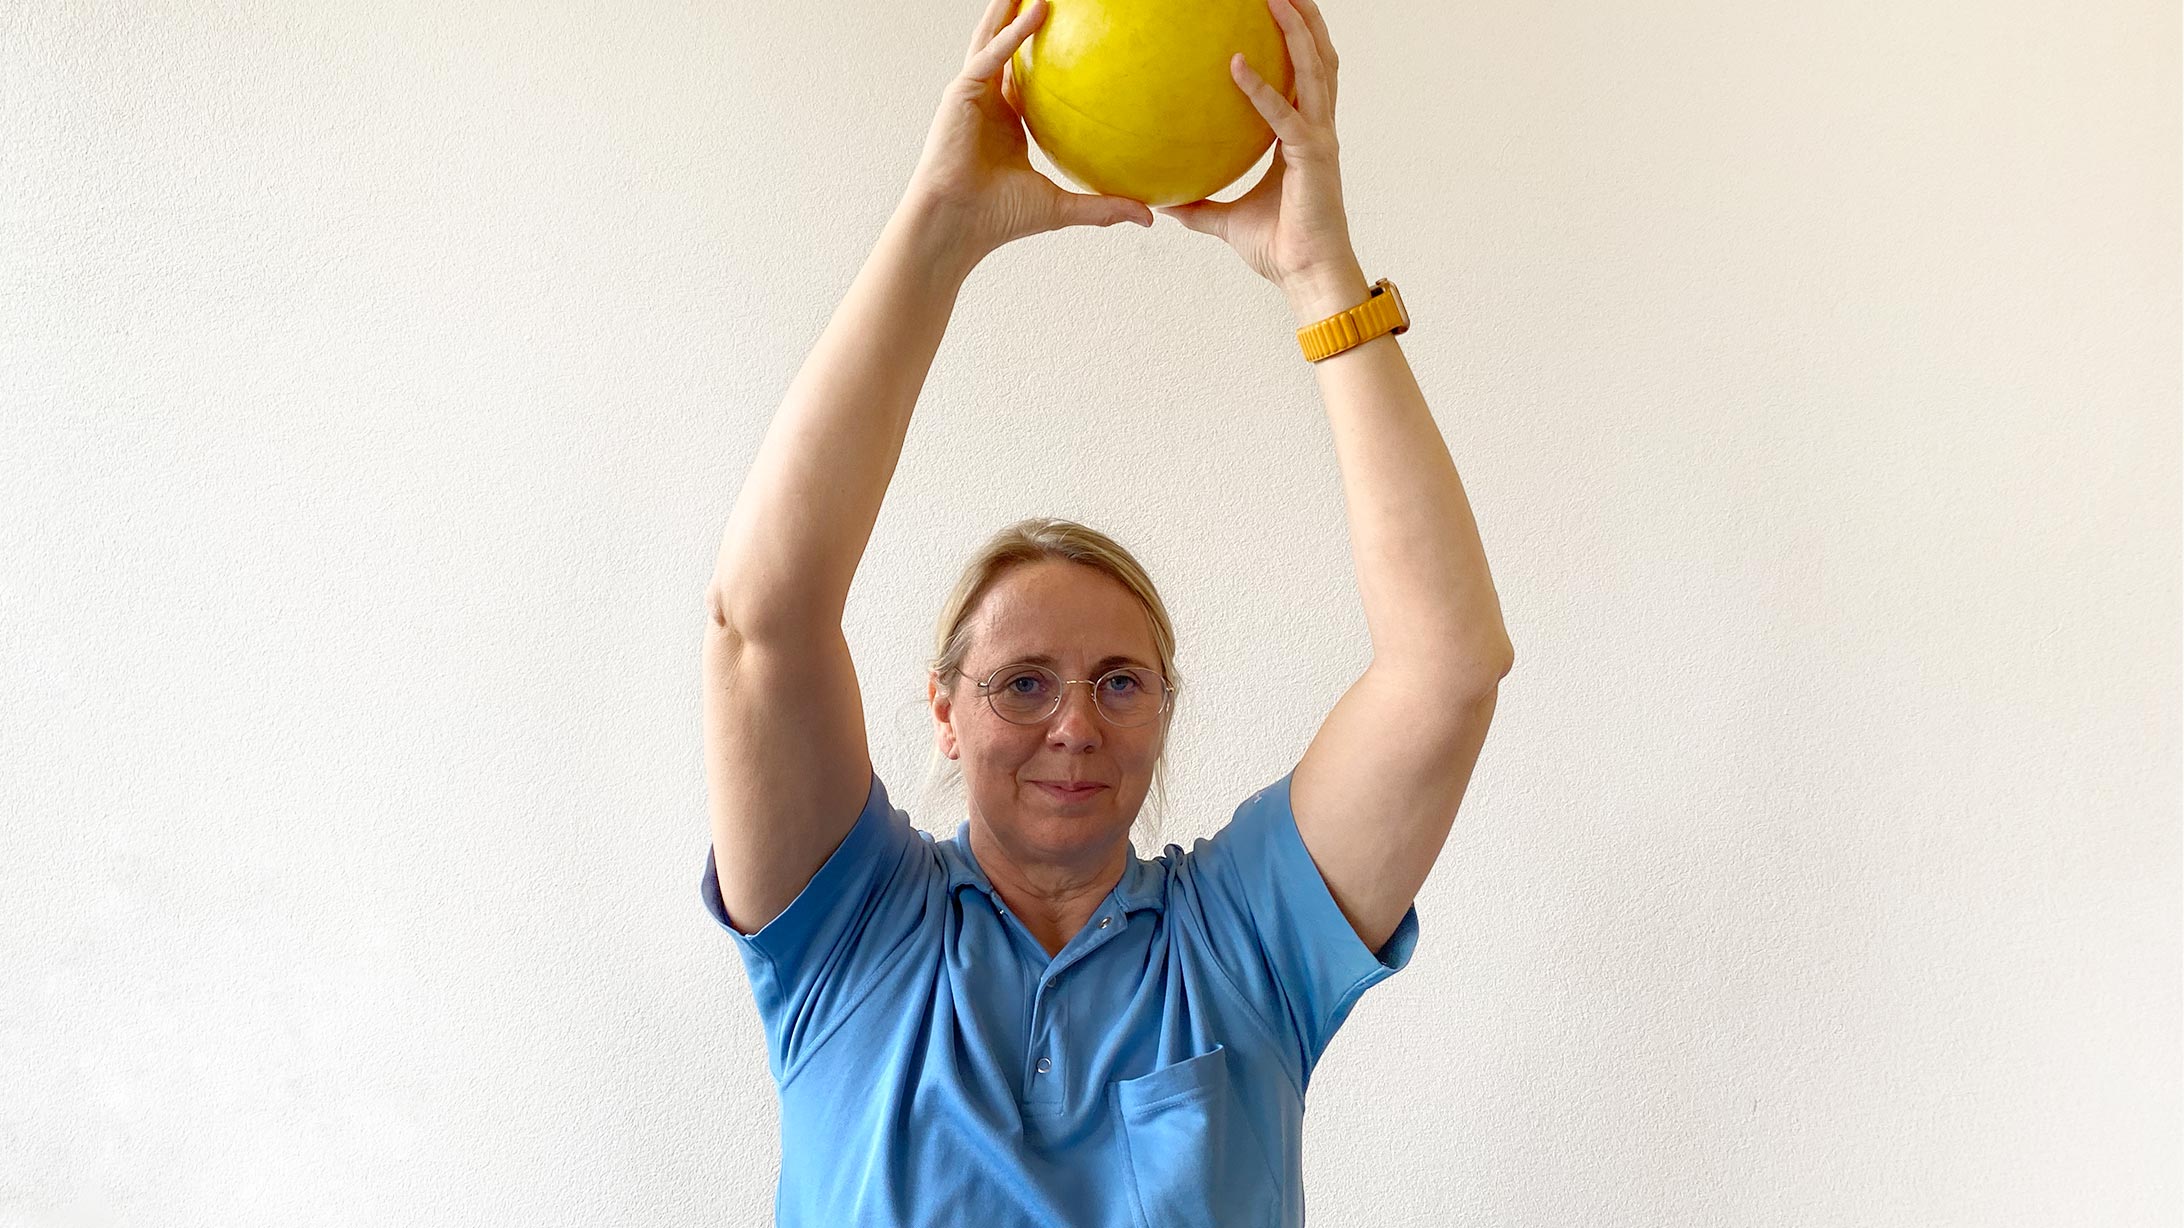 Physiotherapeutin Monika Loebel trainiert mit einem gelben Ball.